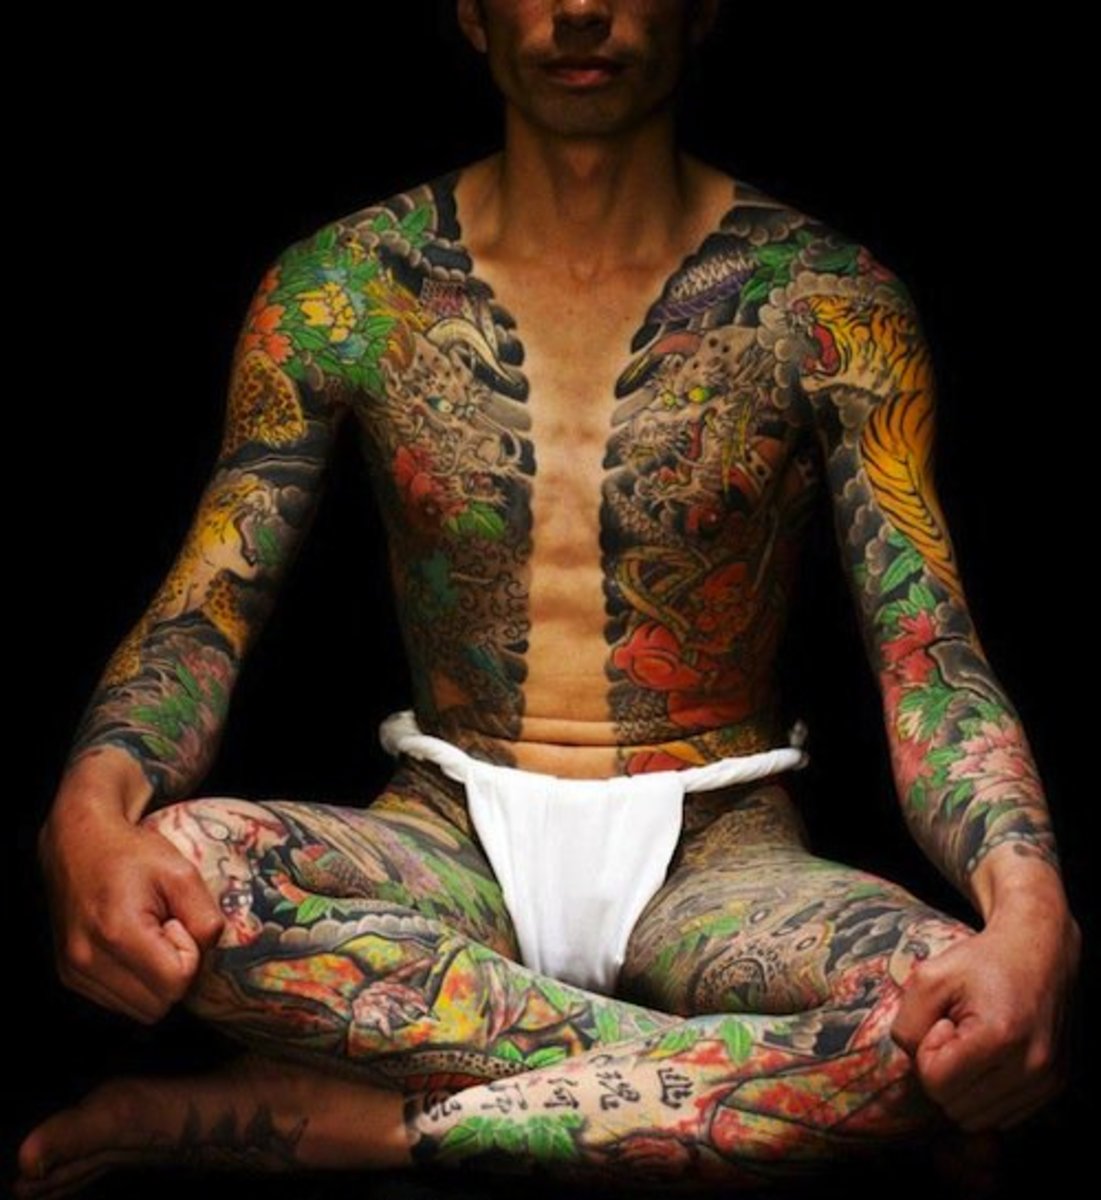 Yakuza style tattoo by Yoshihito Nakano